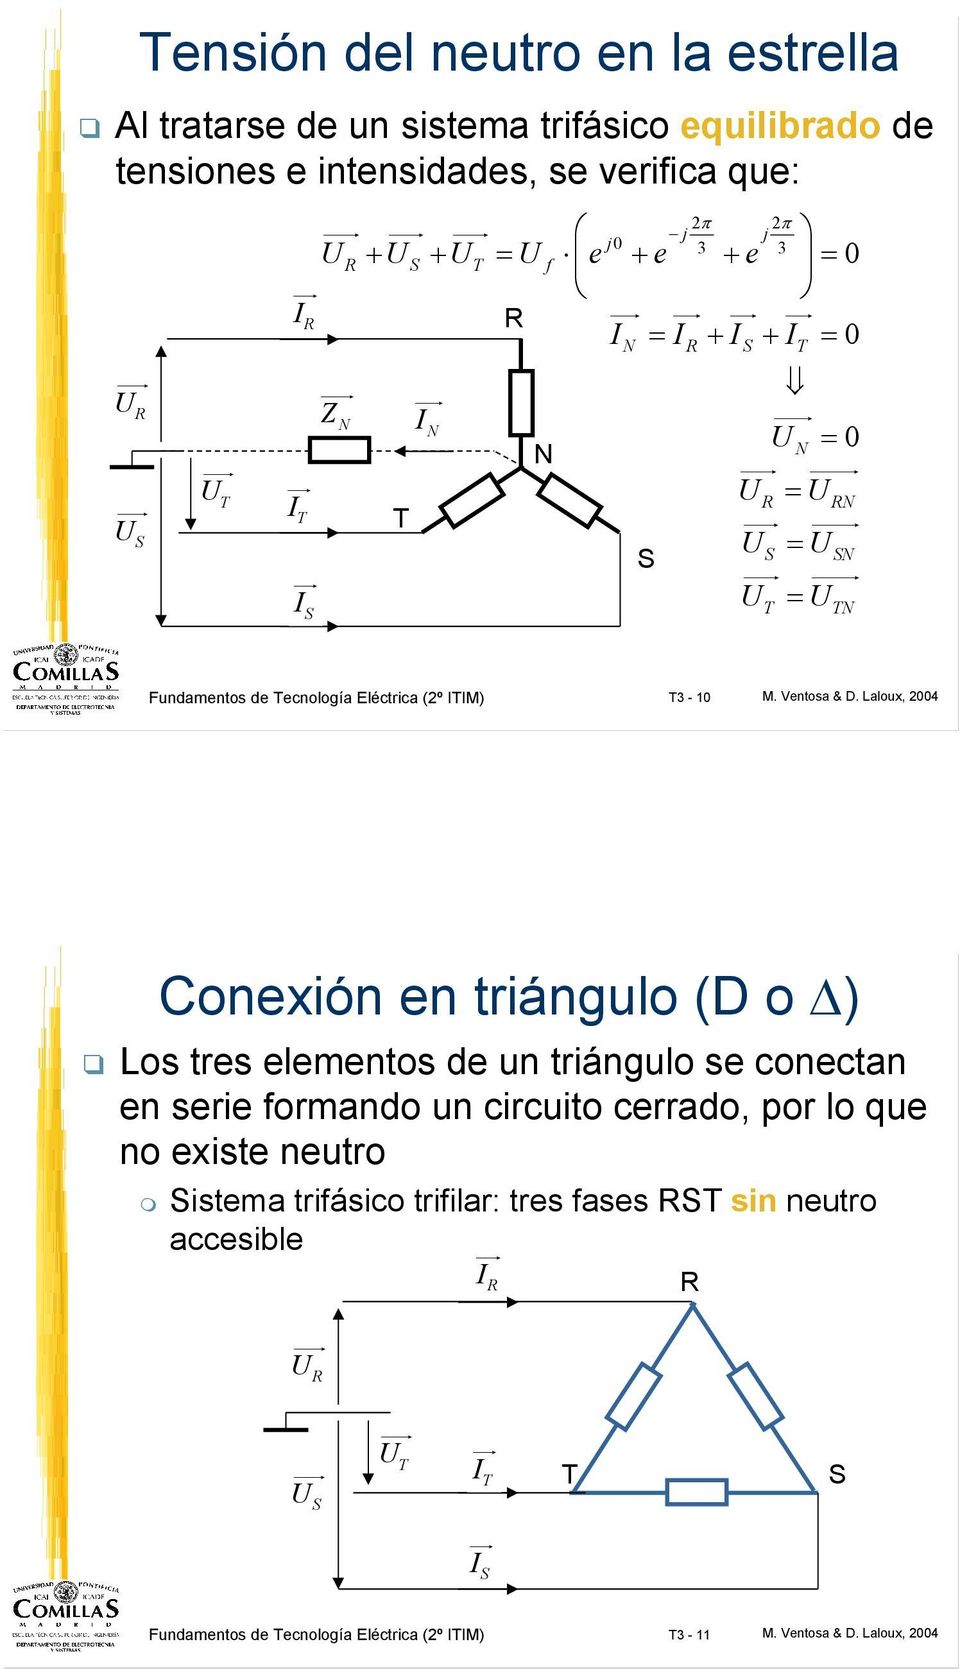 Laloux, 2004 Conxión n triángulo (D o ) Los trs lmntos d un triángulo s conctan n sri formando un circuito crrado, por lo qu no